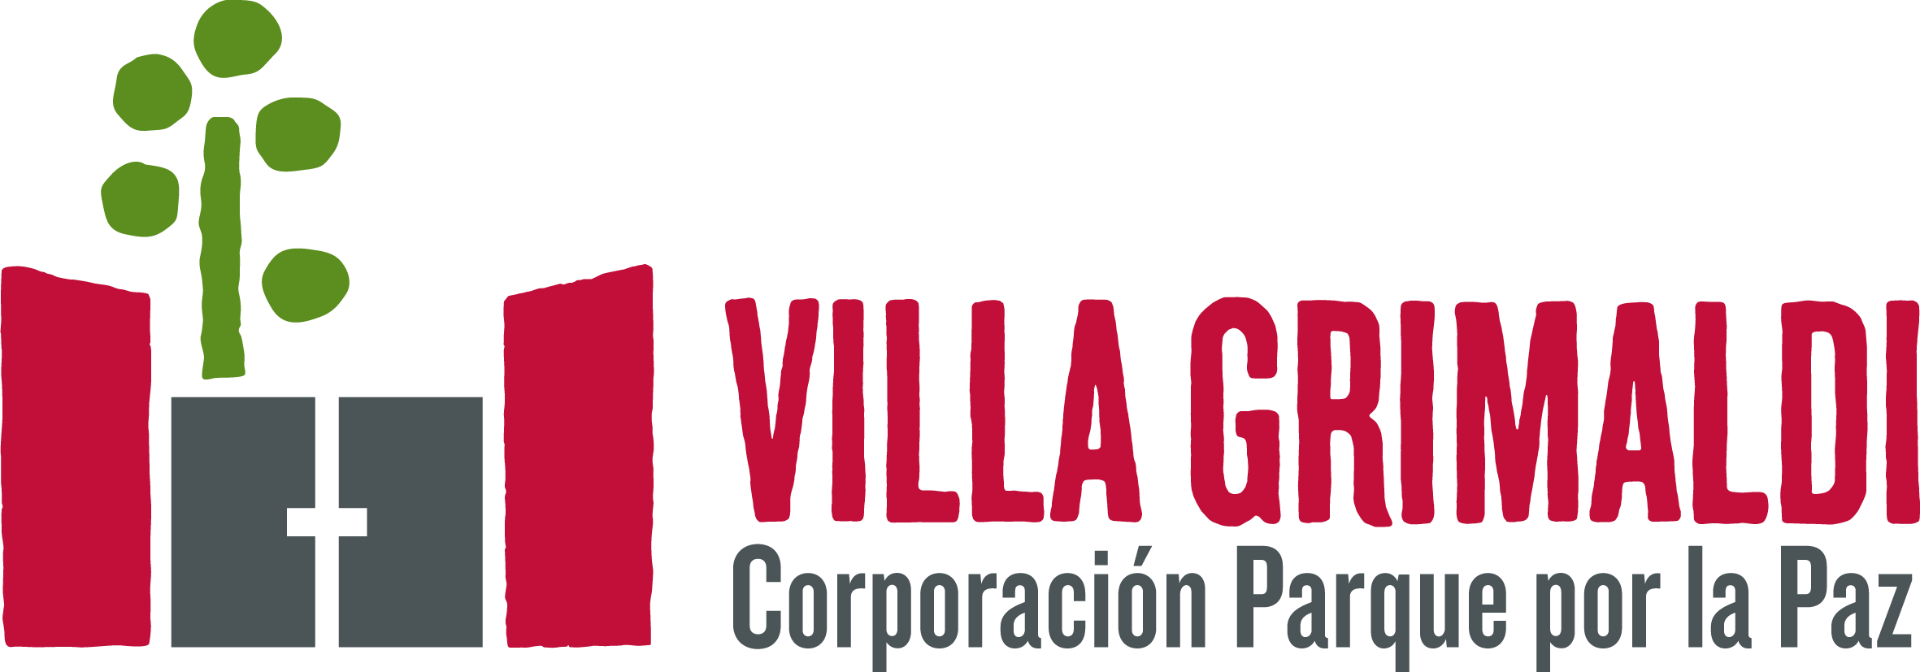 Villa Grimaldi - Corporación Parque por la Paz 